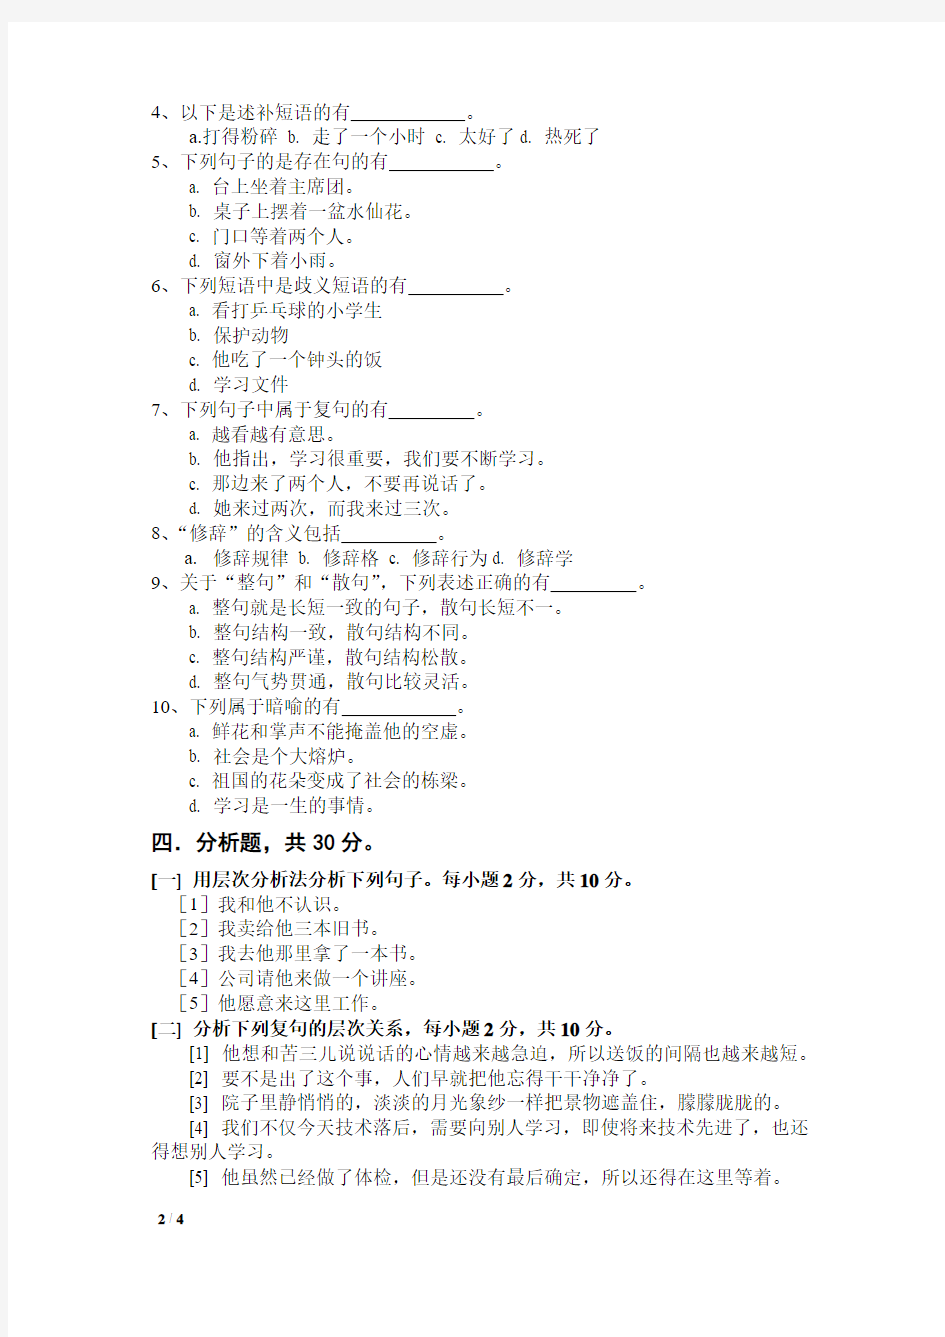 2019年春河北师范大学现代汉语考试题考试卷及答案解析(十)【最新版】